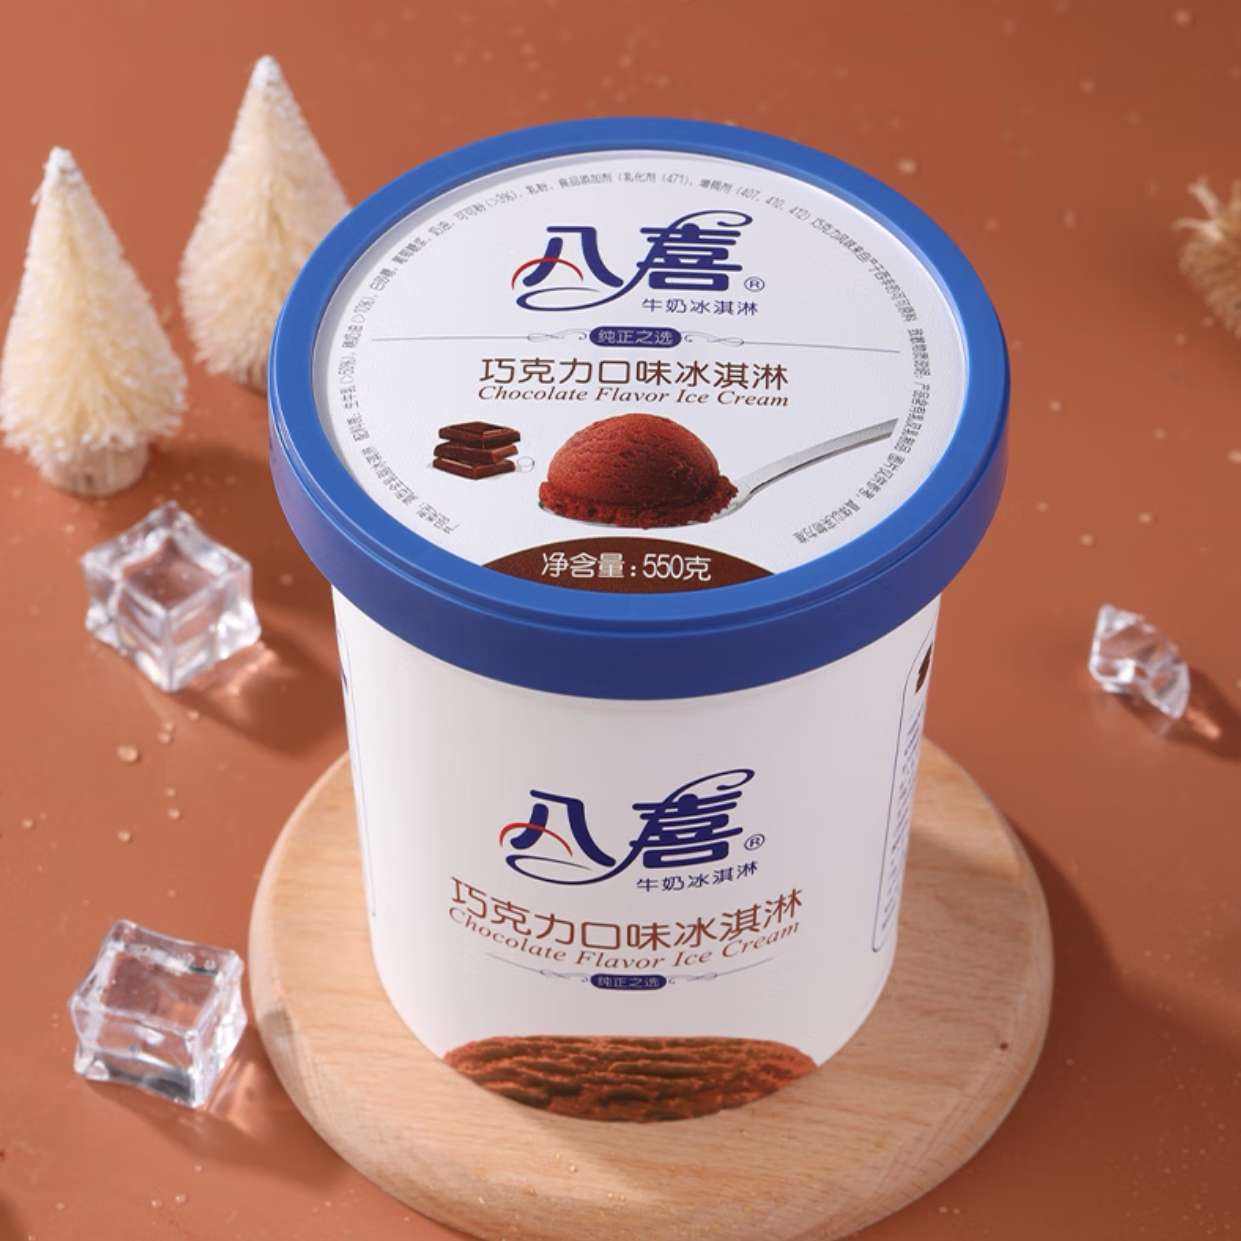 八喜冰淇淋 巧克力口味550g*1桶 家庭装 生牛乳冰淇淋桶装*3件 62.19（折合20.73